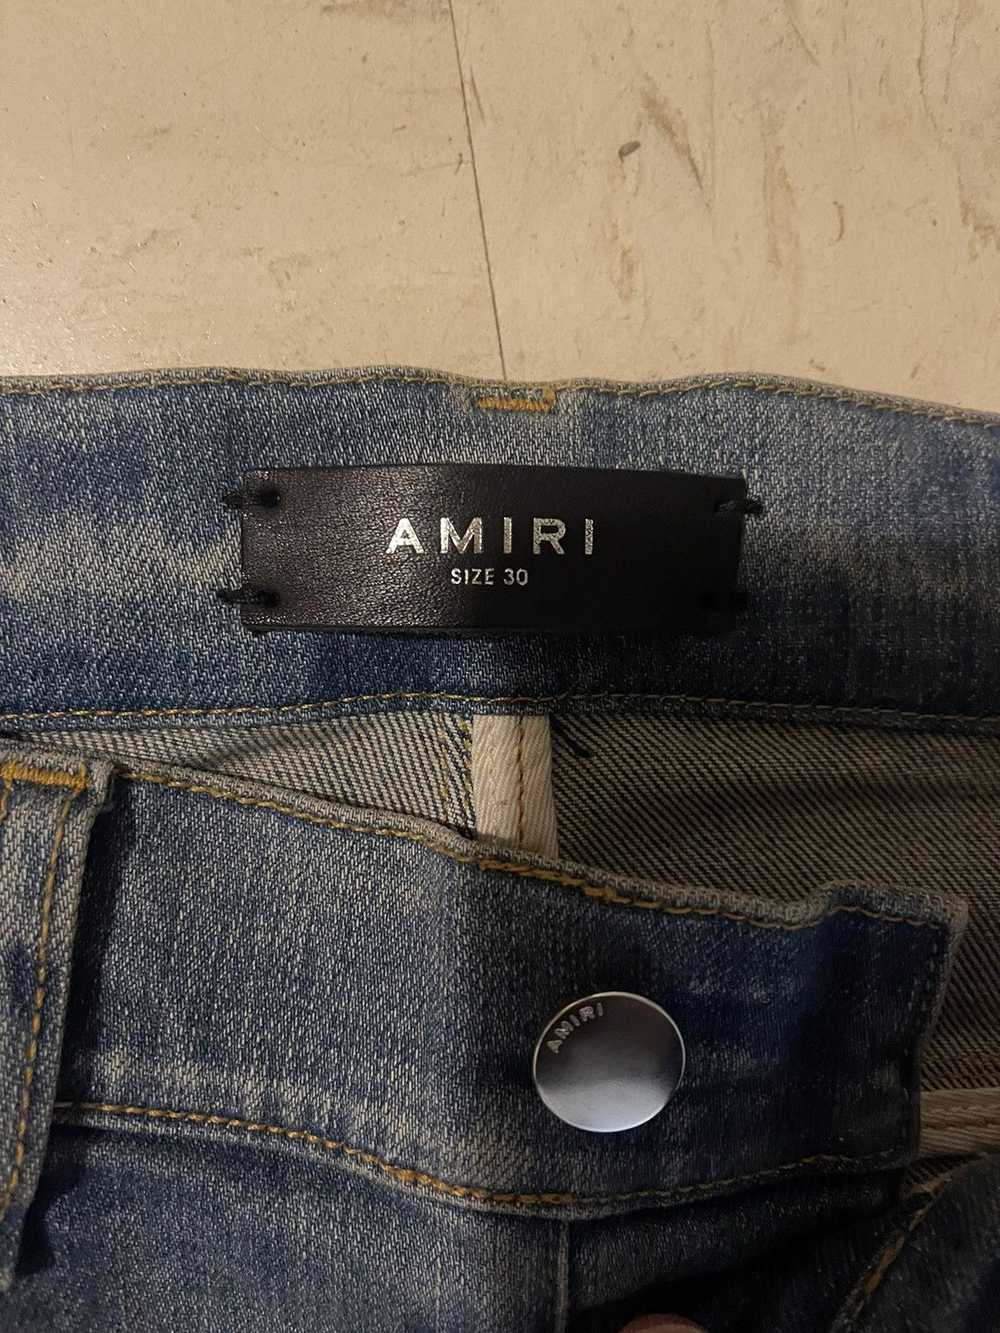 Amiri Amiri Mx1 Paint Splatter Jeans - image 5